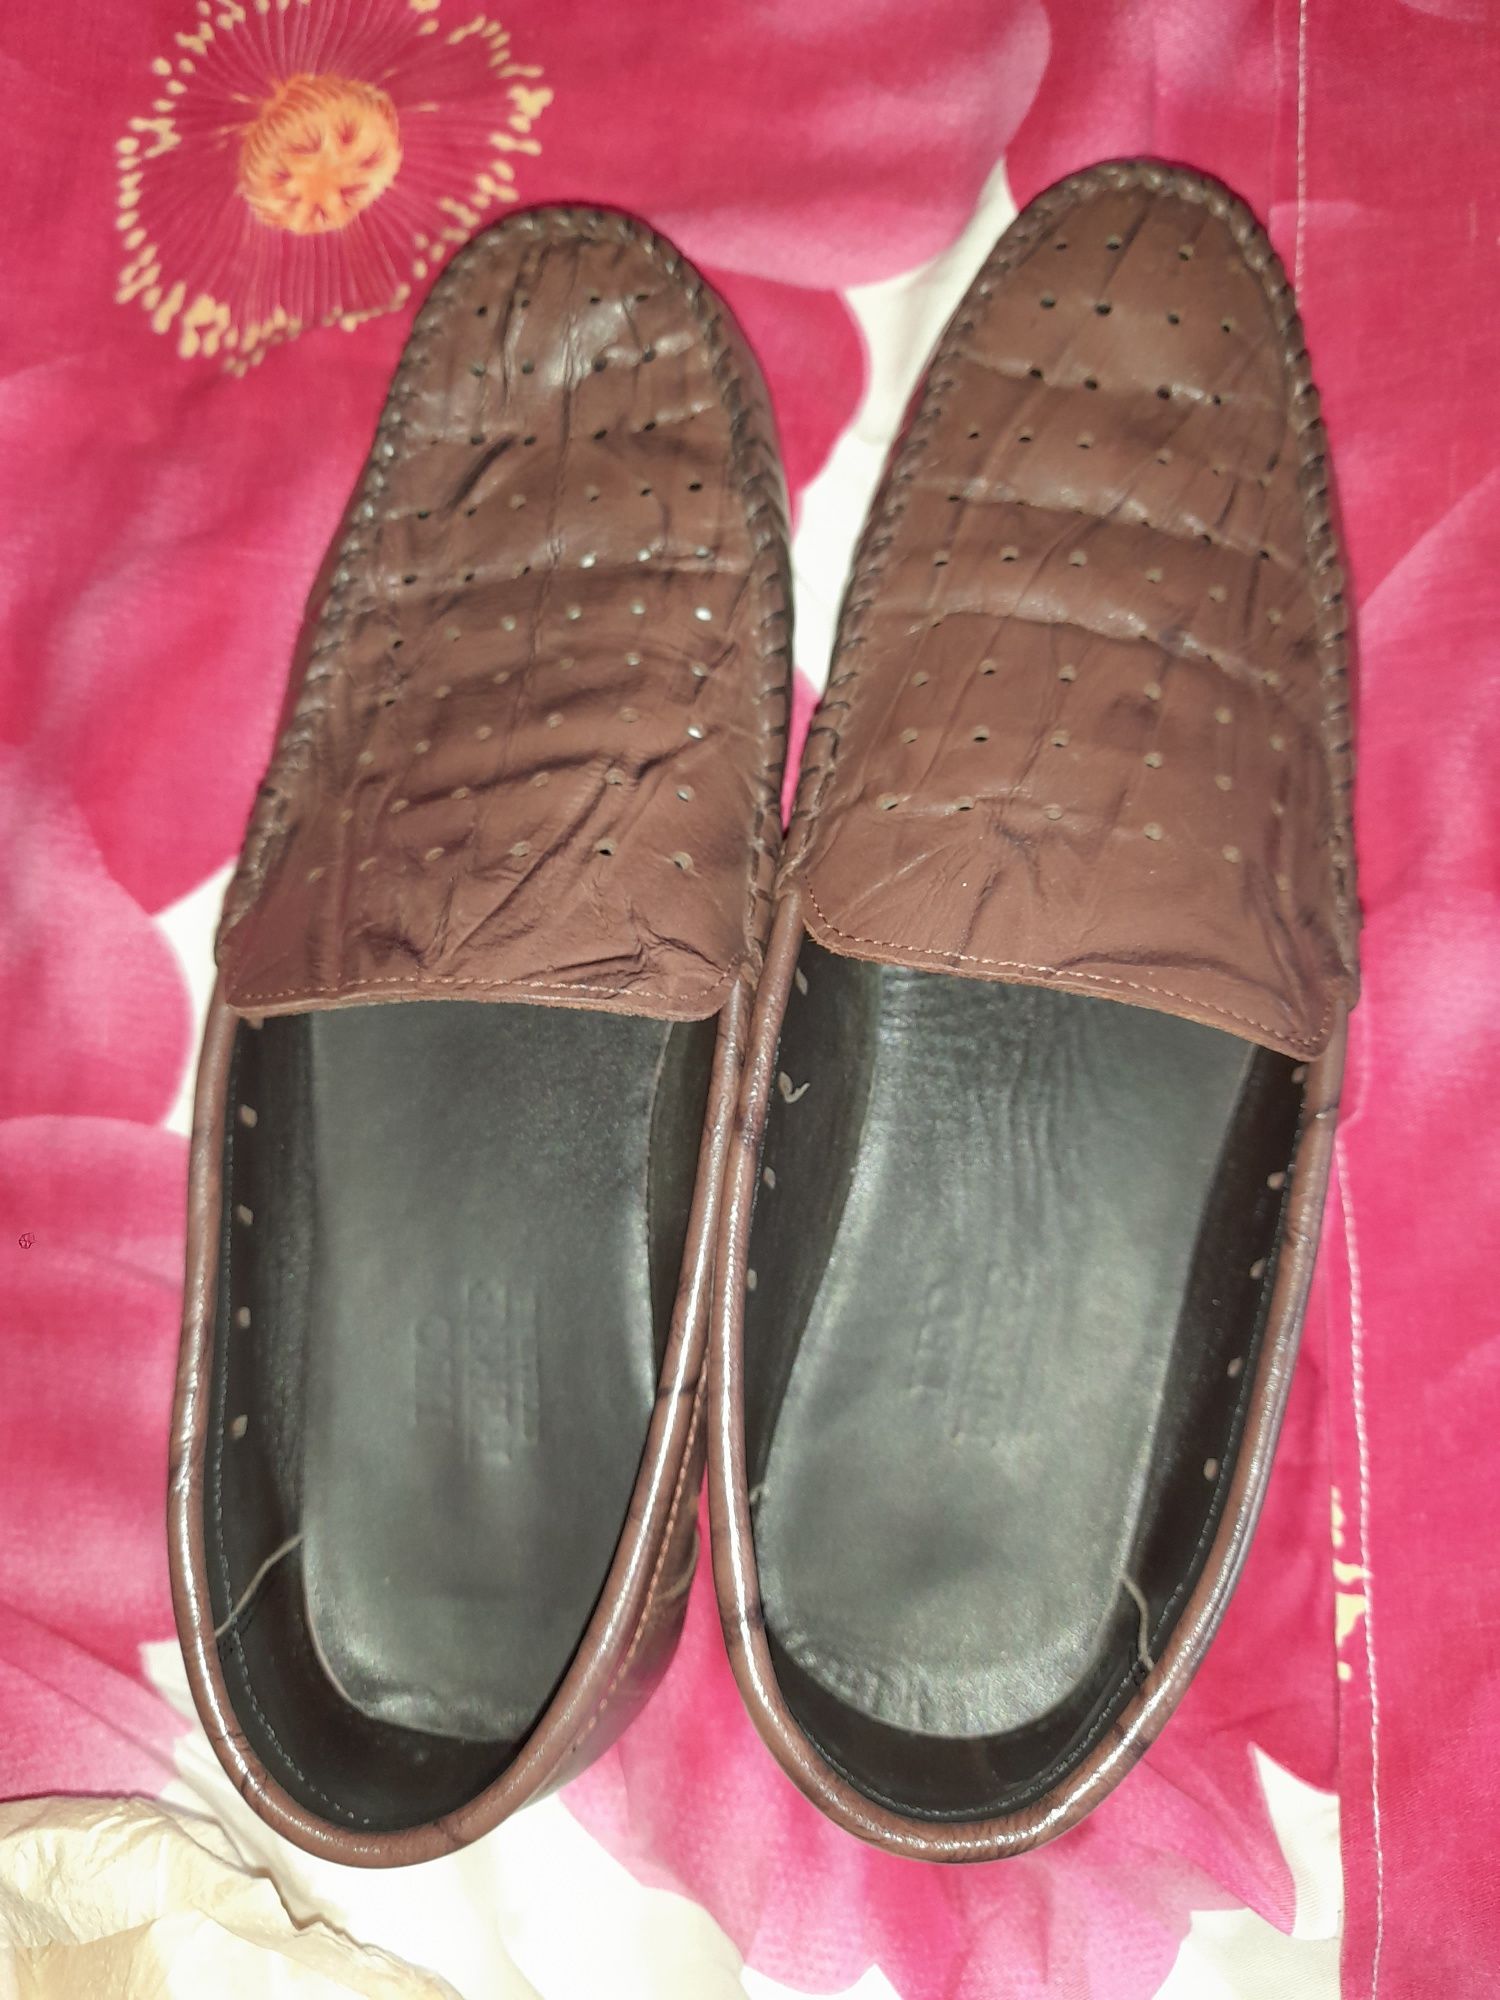 Стильная модная обувь из кожи, коричневого цвета.Данная модель создана